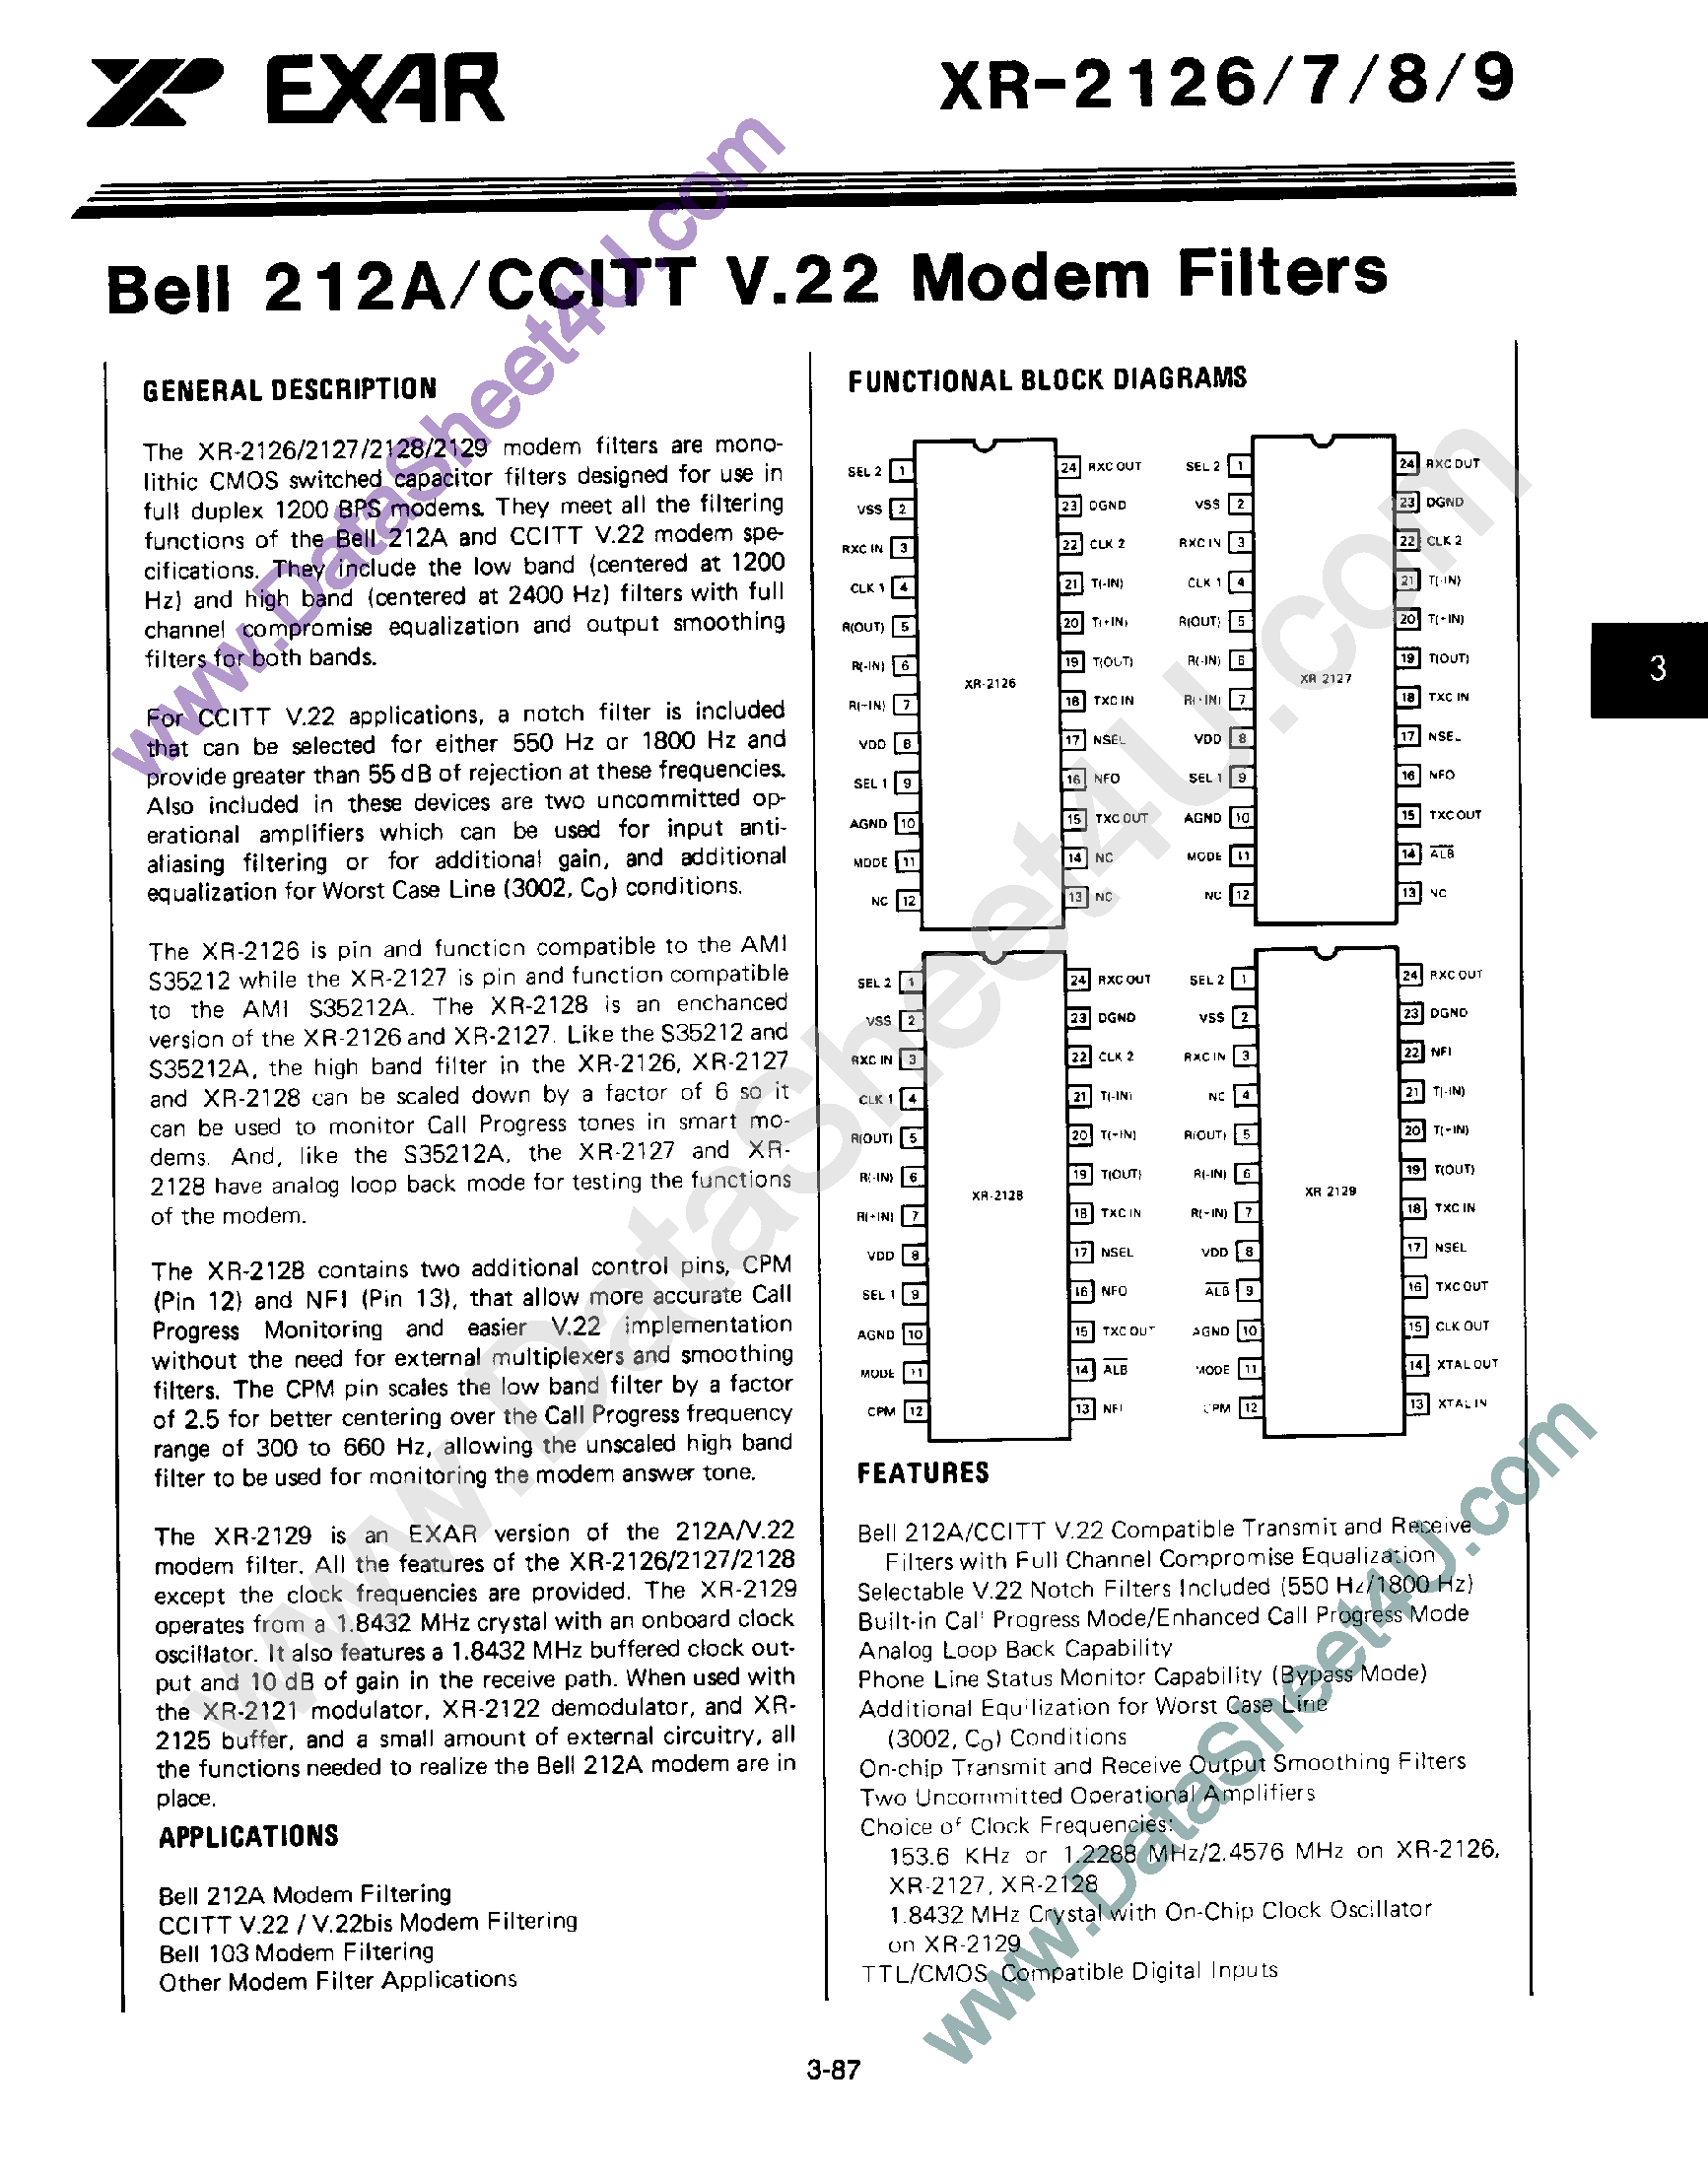 Даташит XR2126 - Bell 212A / CCITT V.22 Modem Filters страница 1